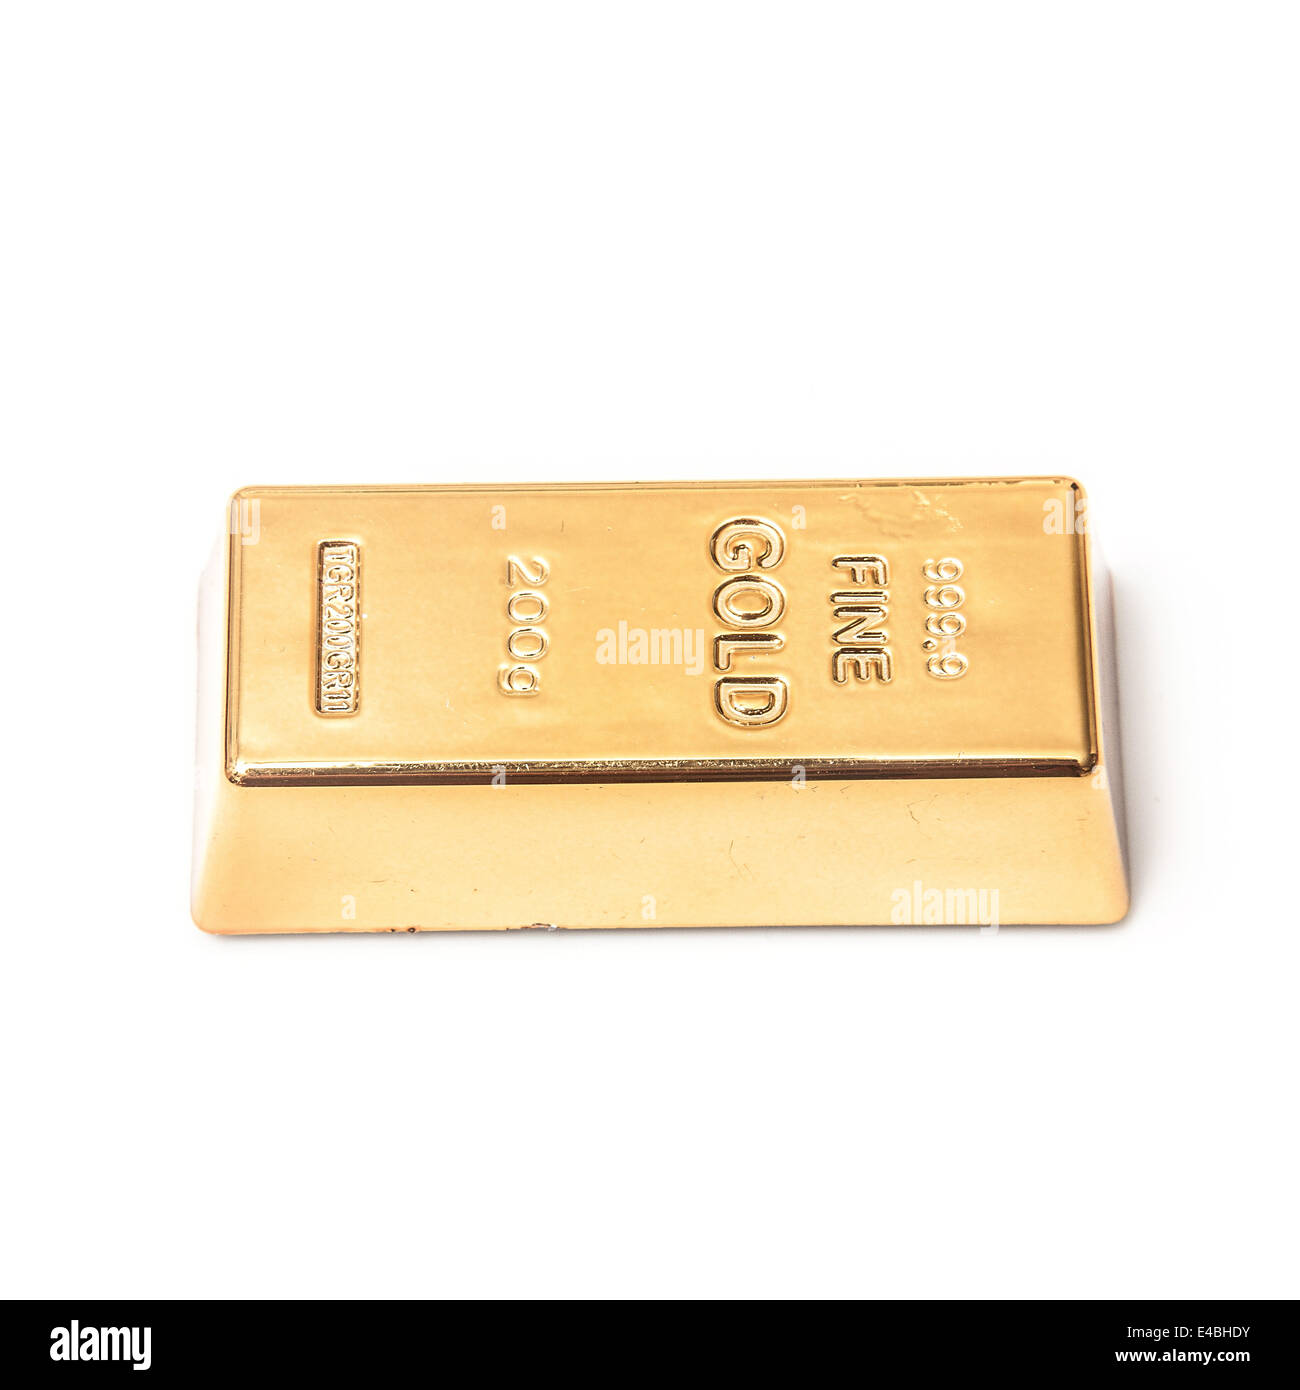 200 gramos de oro en lingotes o barras aislados en un estudio de fondo blanco. Foto de stock